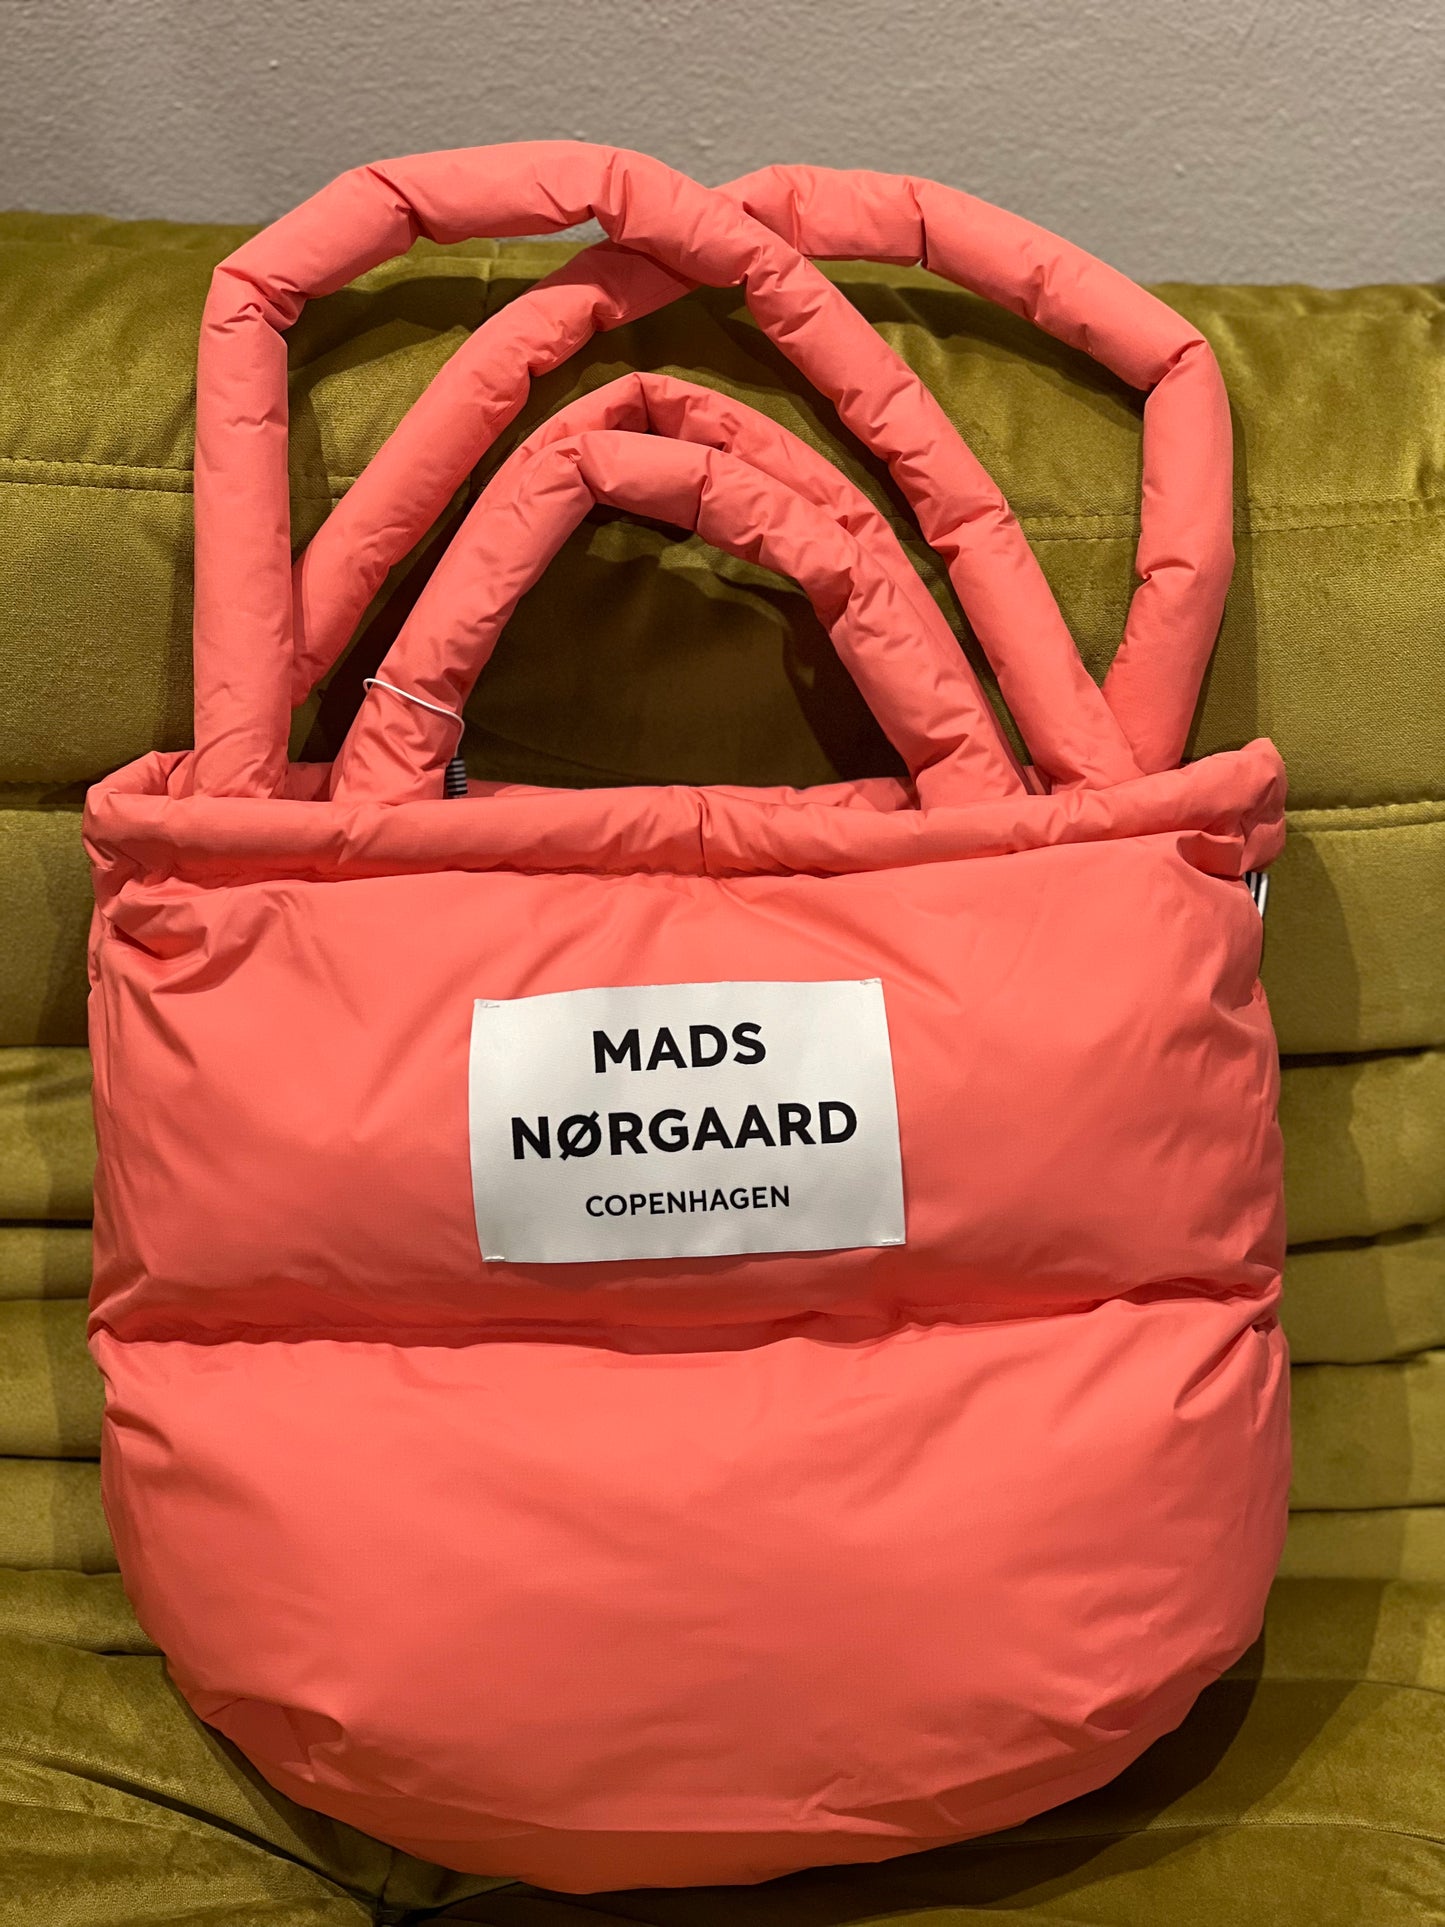 Mads Nørgaard Pillow Bag